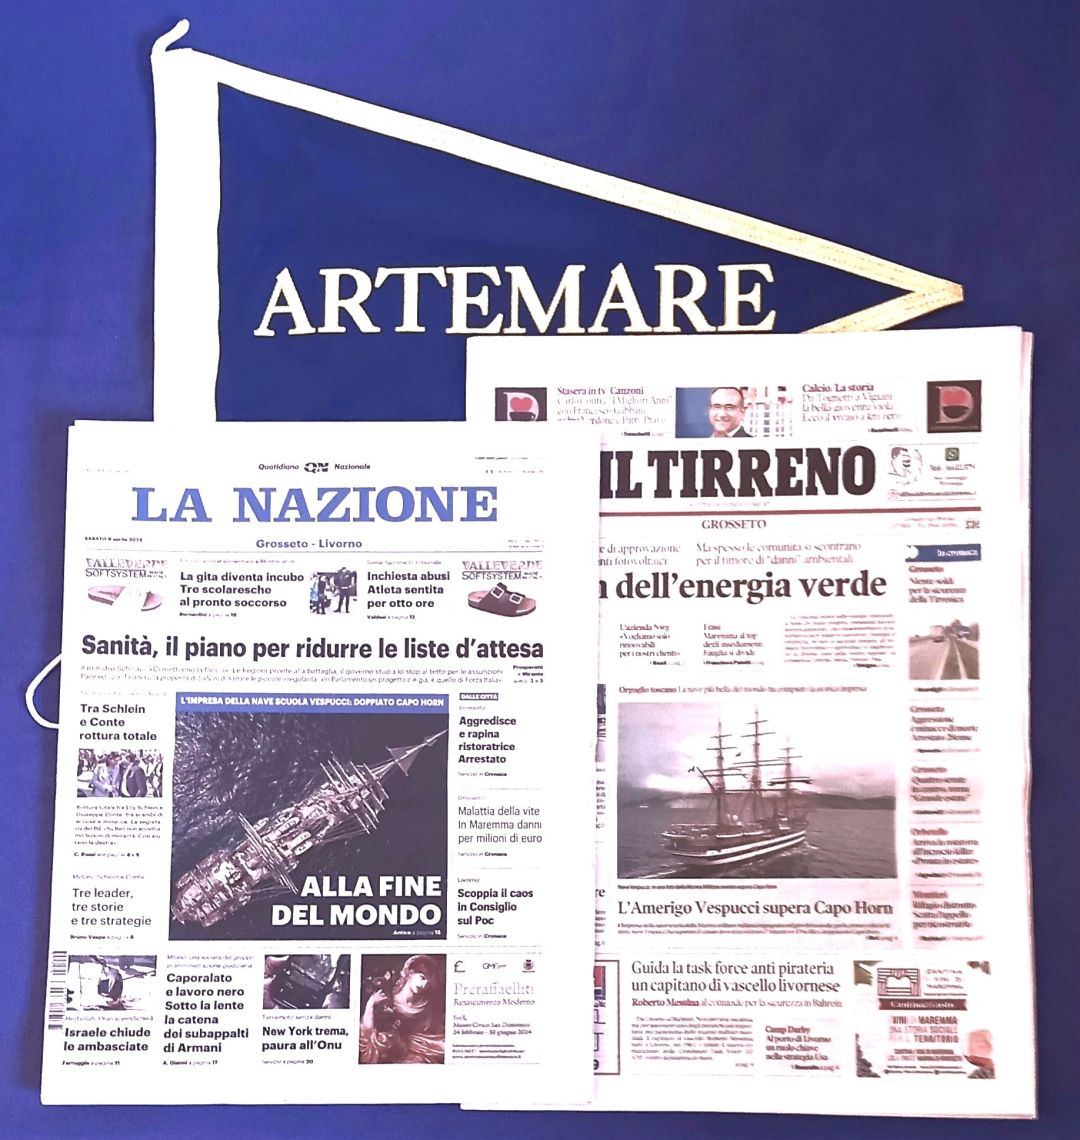 Artemare Club ricorda l’Amerigo Vespucci alla “Fine del Mondo” dopo la Patria del Tango